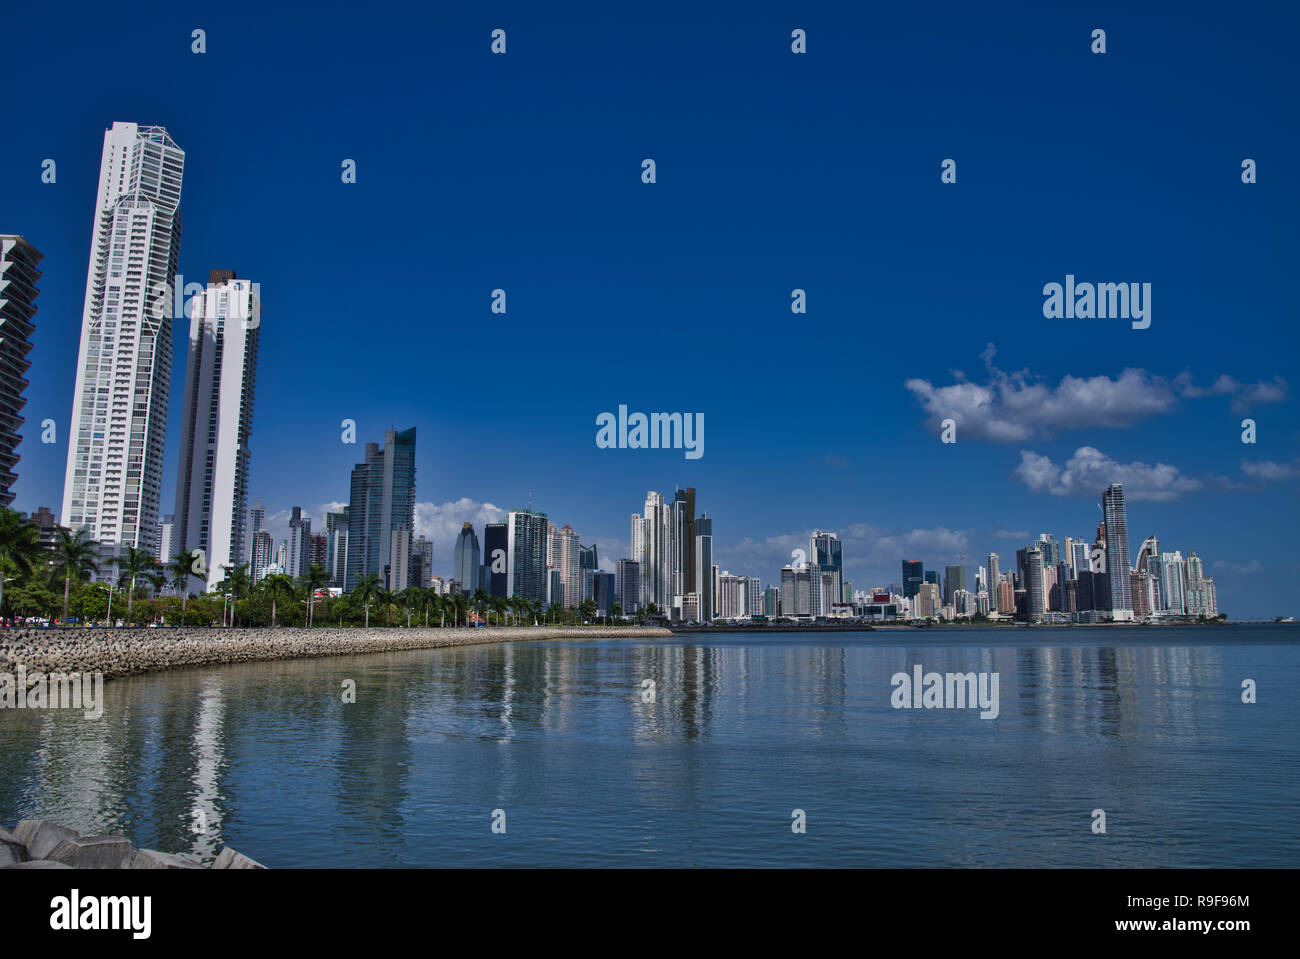 La ville de Panama, Panama, Horizon Costal avec gratte-ciel Banque D'Images